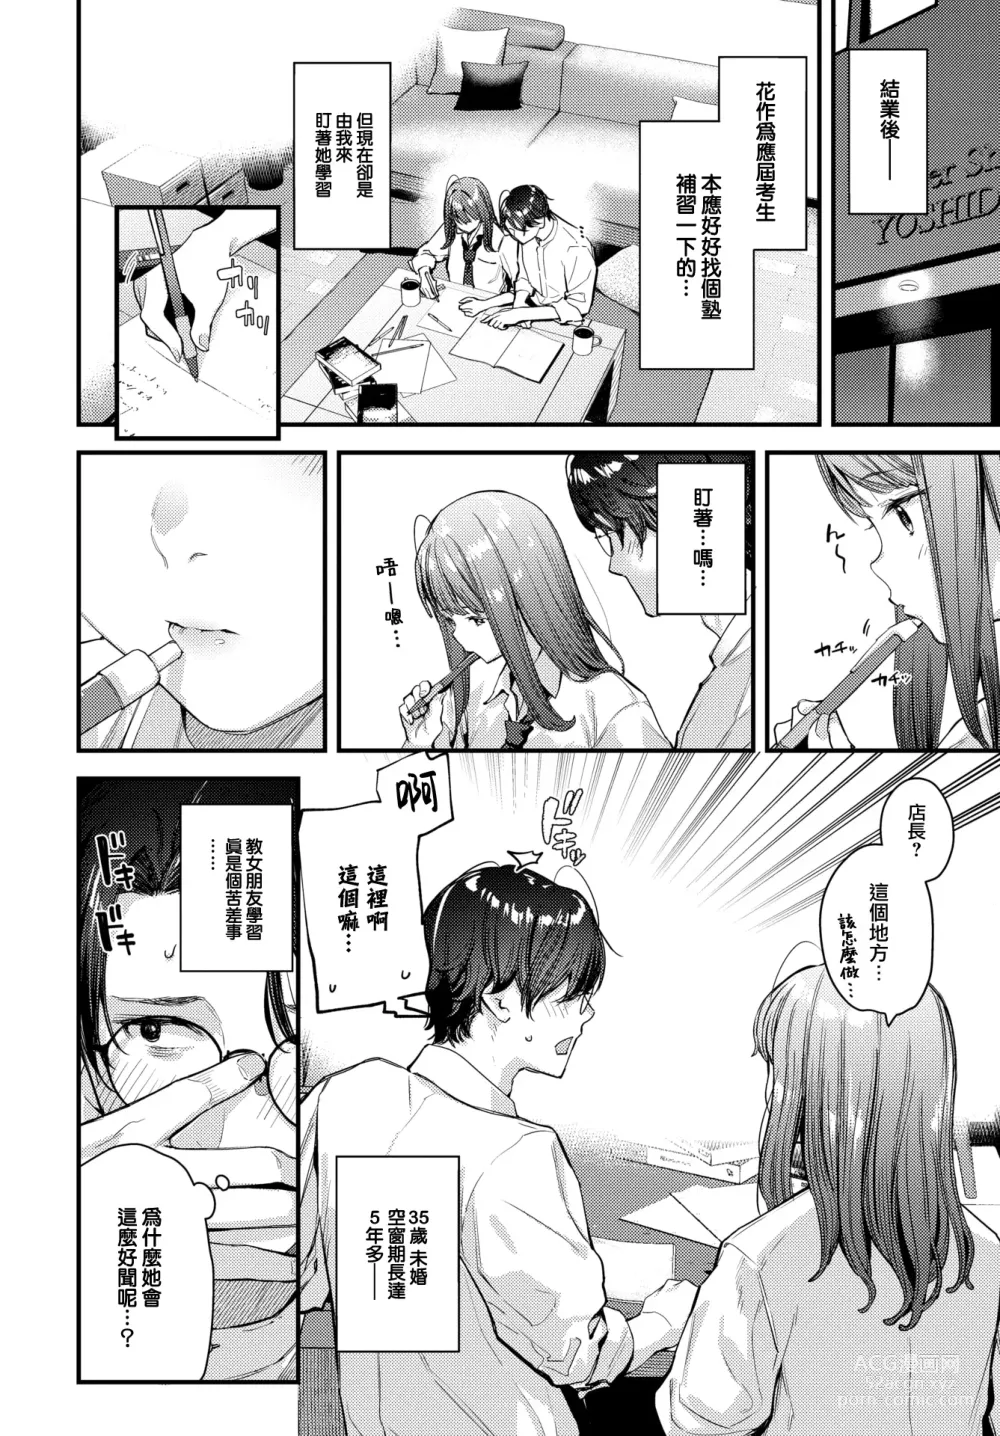 Page 5 of manga Bokudake no Hana ~Jouhen~